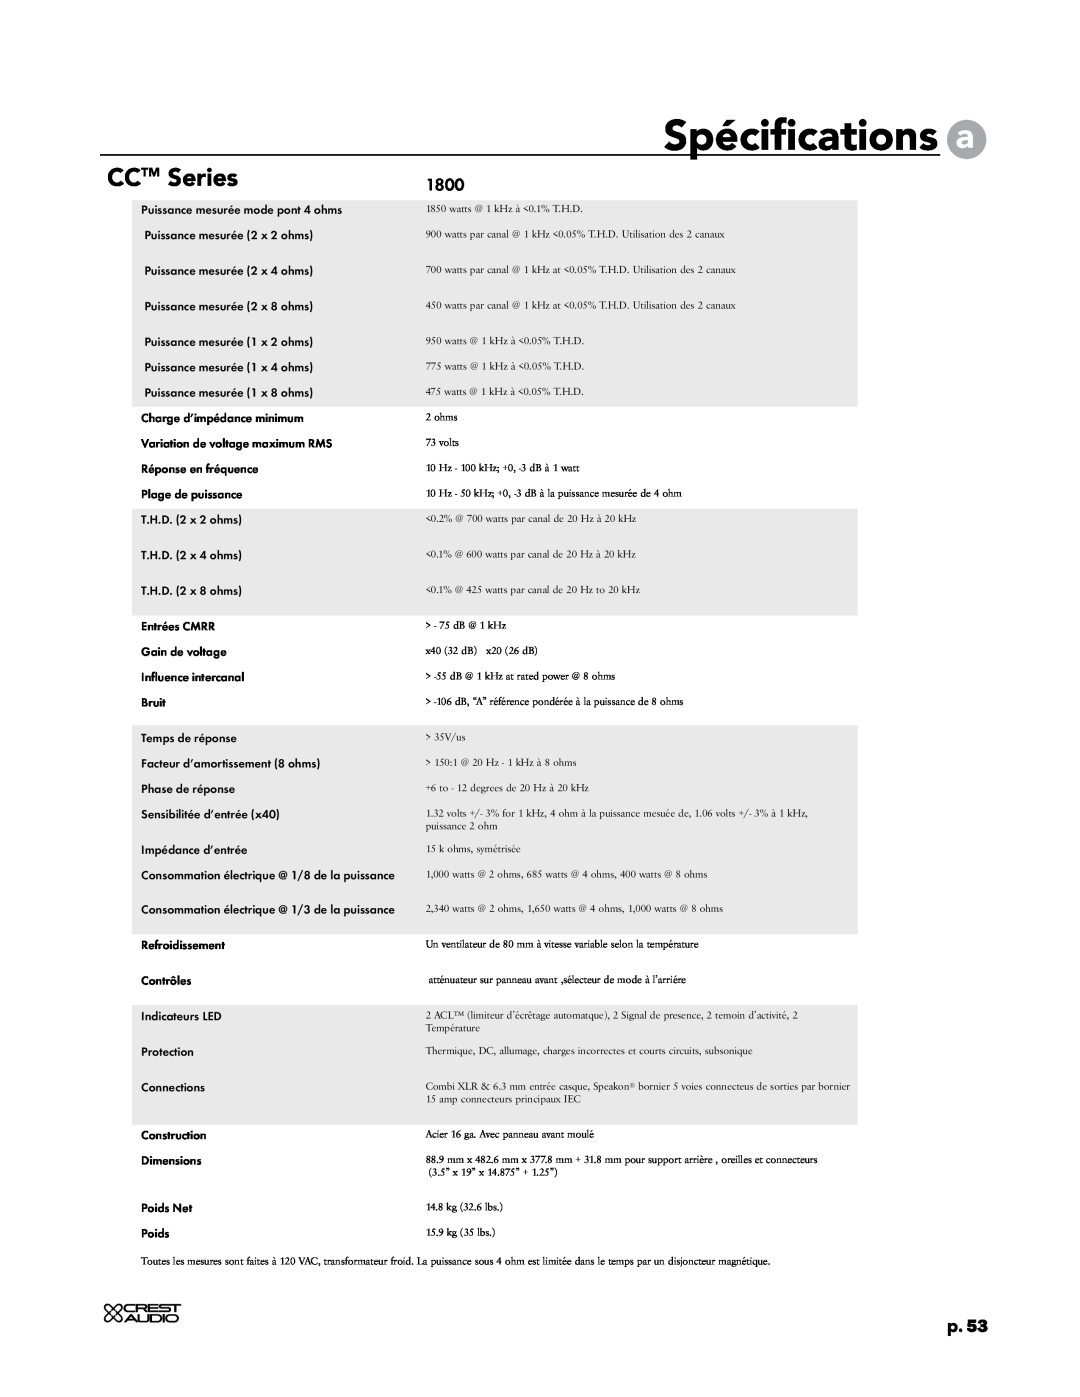 Crest Audio CC 2800, CC 5500, CC 4000, CC 1800 owner manual Spécifications a, CCTM Series, p.53 